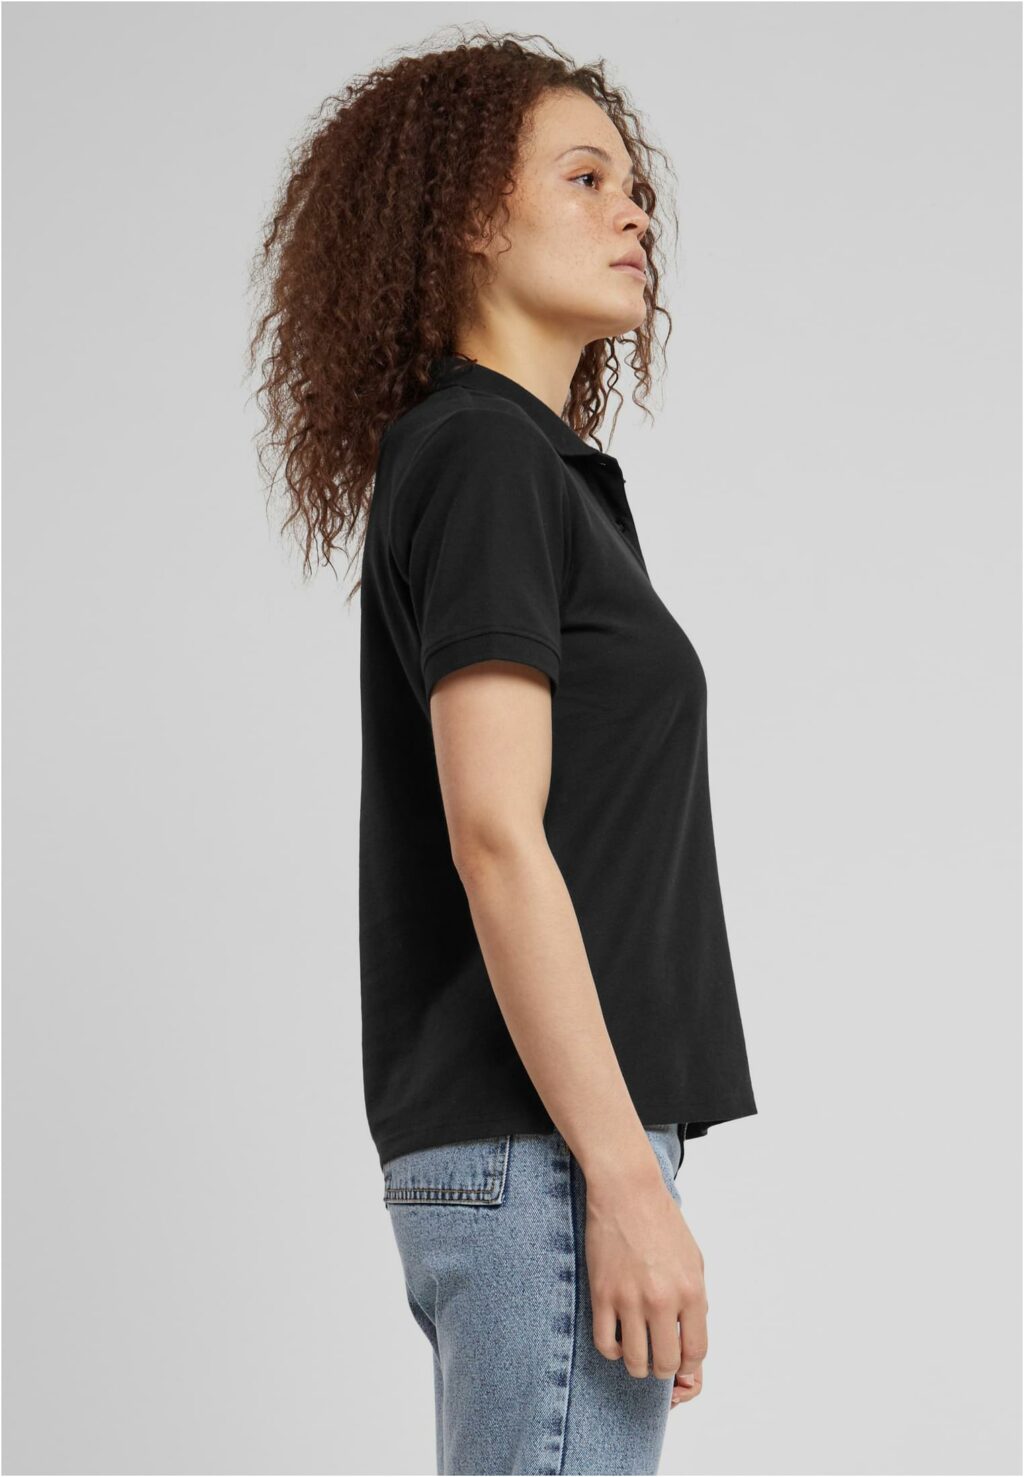 Urban Classics Ladies Polo Shirt black TB6183